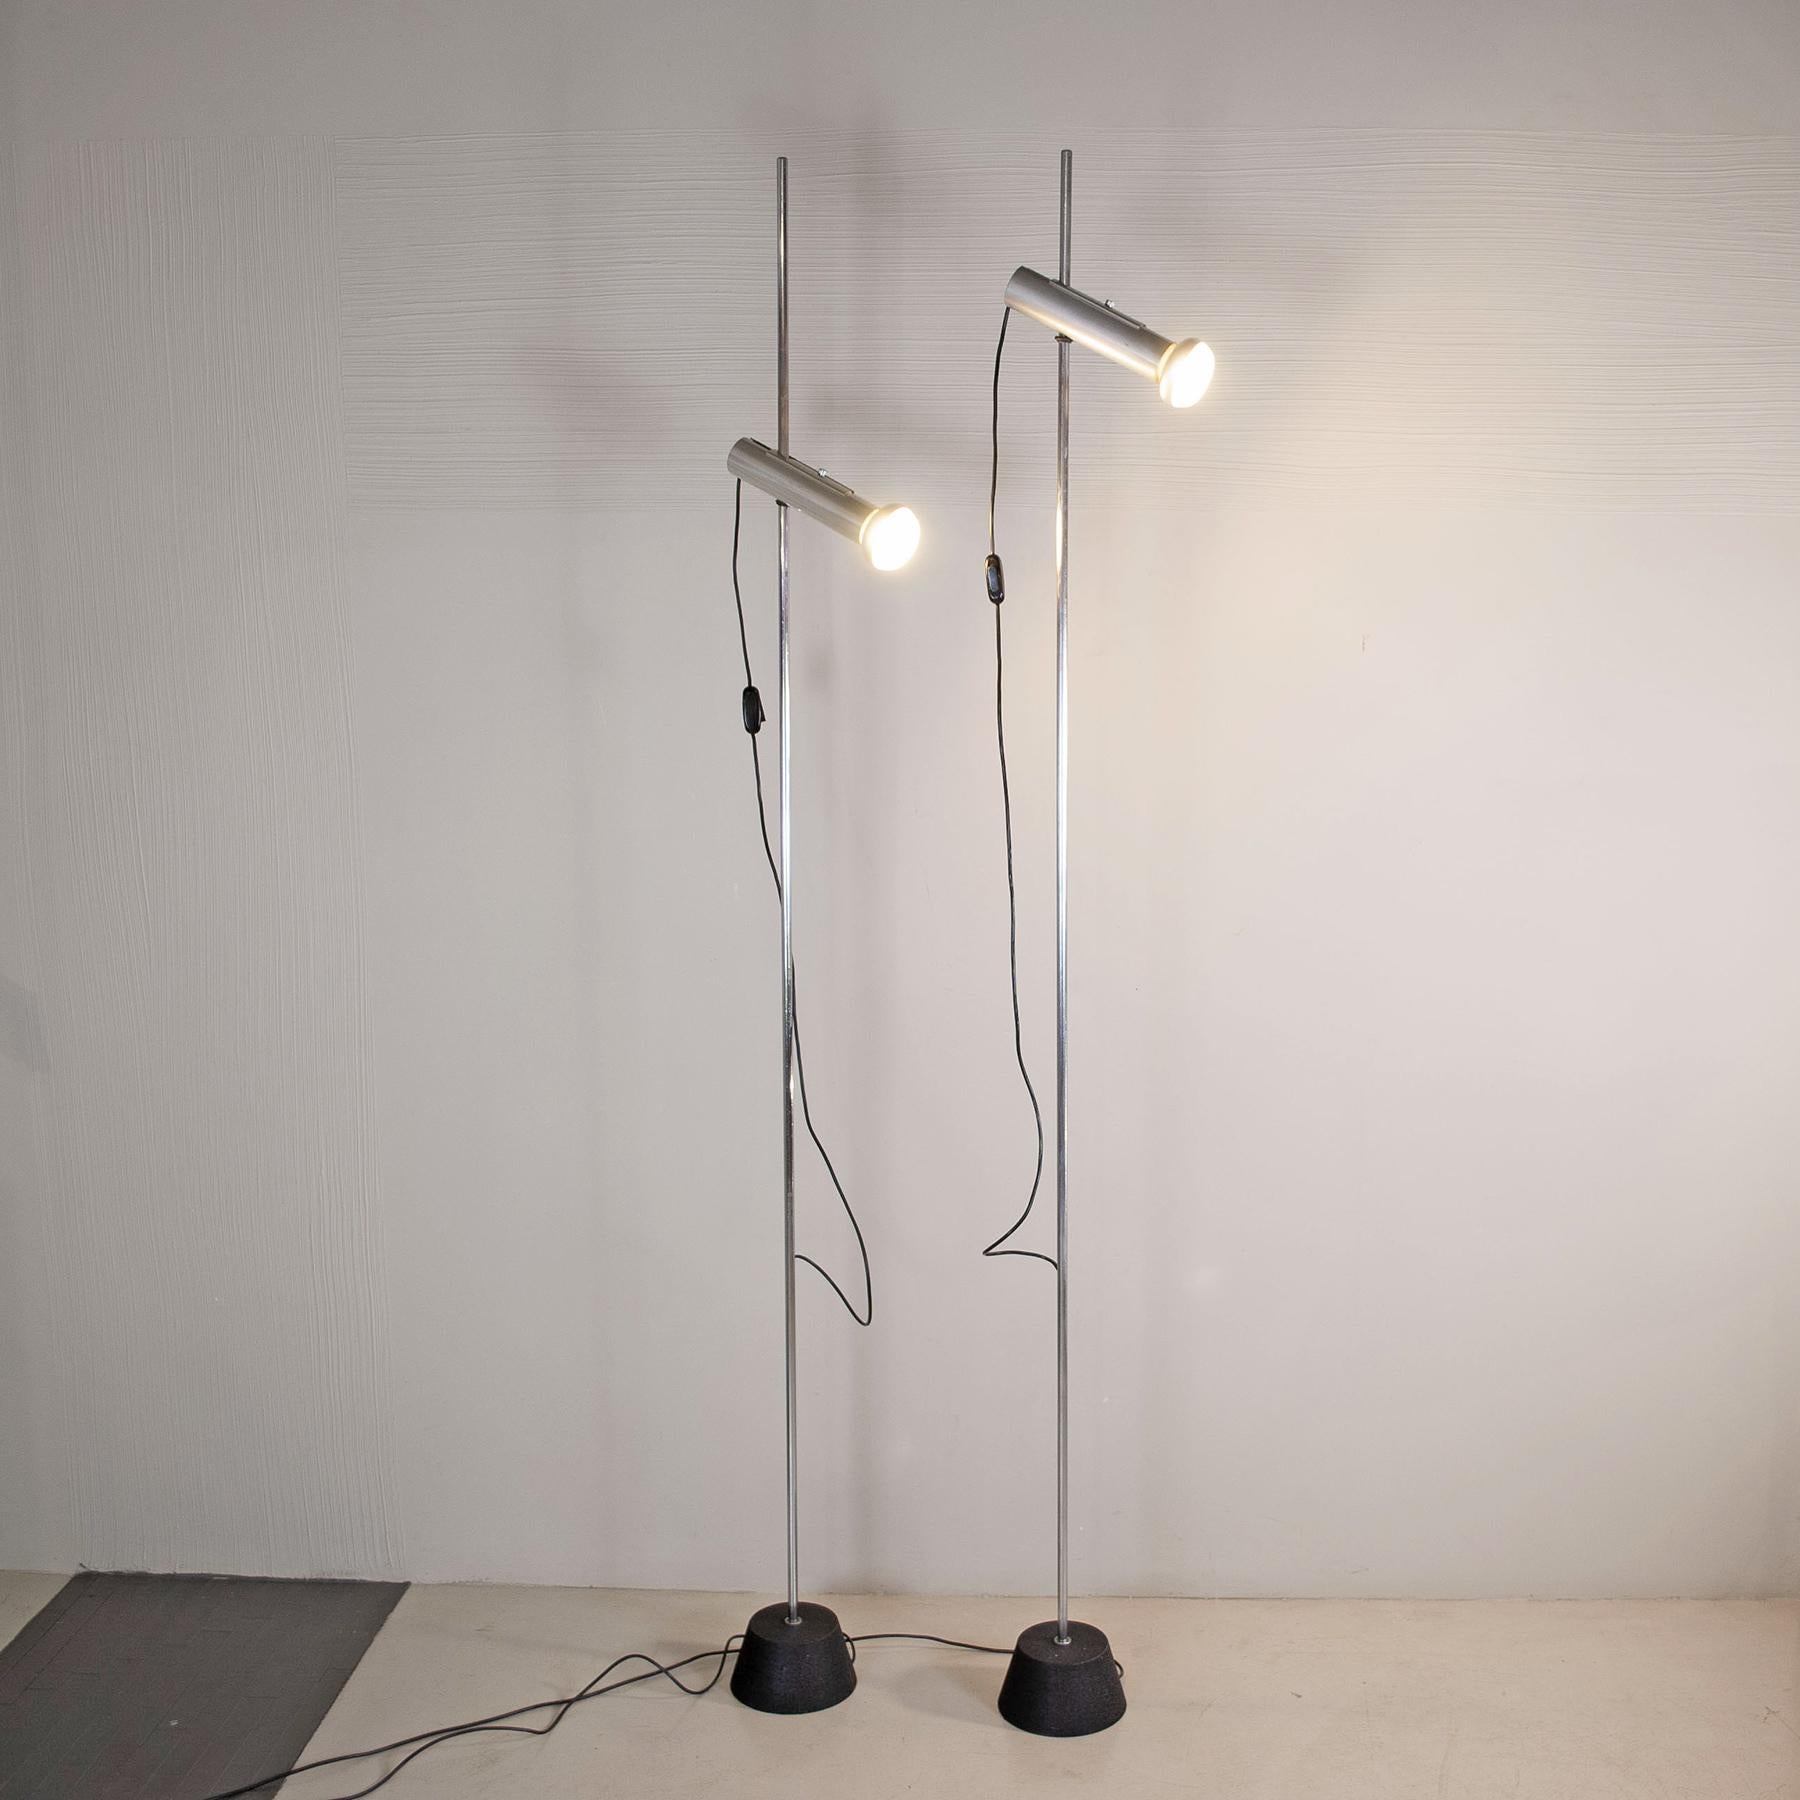 Gino Sarfatti Paar Stehlampen Modell 1074 1950er Jahre (Aluminium)